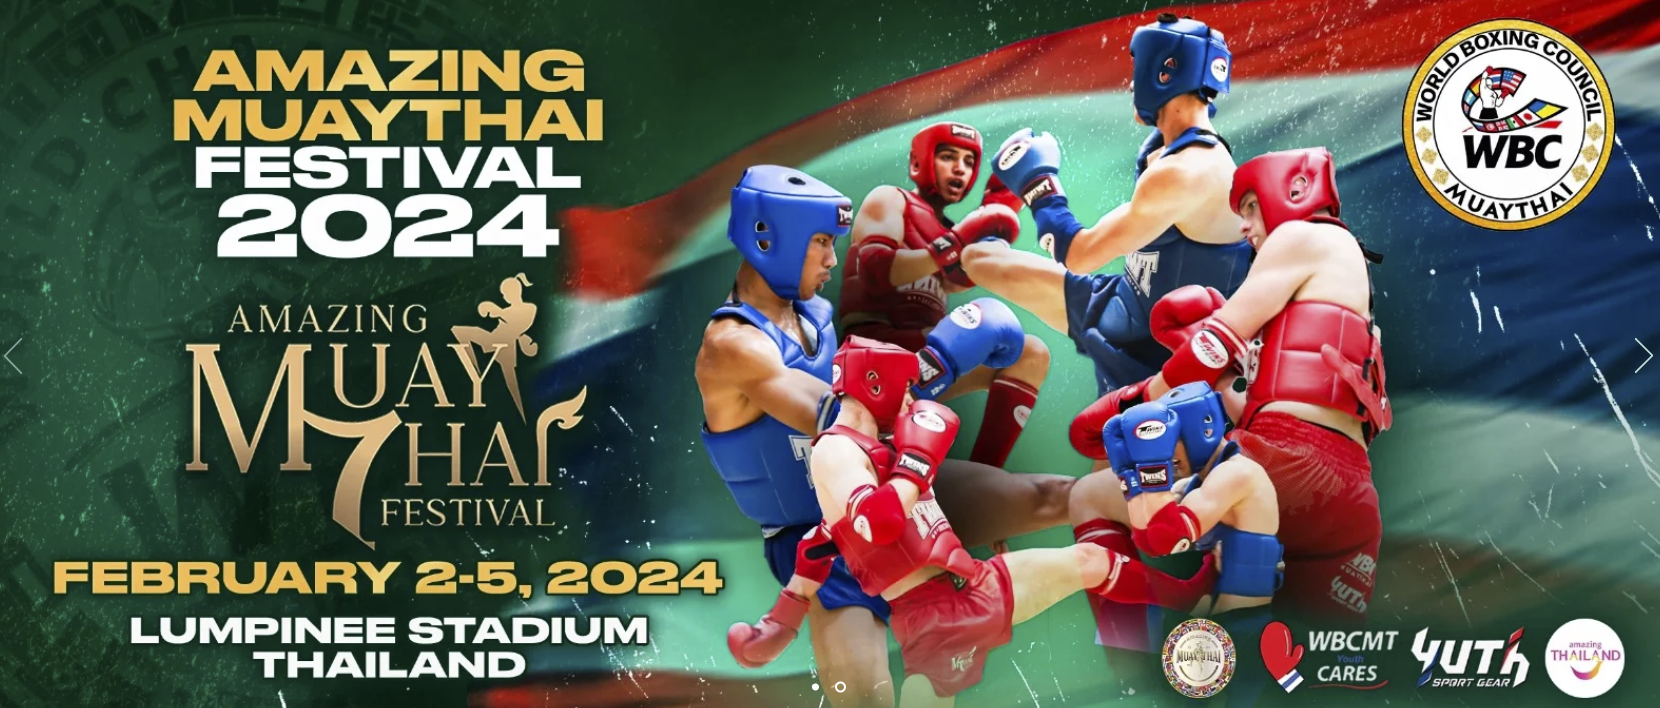 raknuuathai WBC AMAZING MUAY THAI FESTIVAL 2024 EN BANGKOK